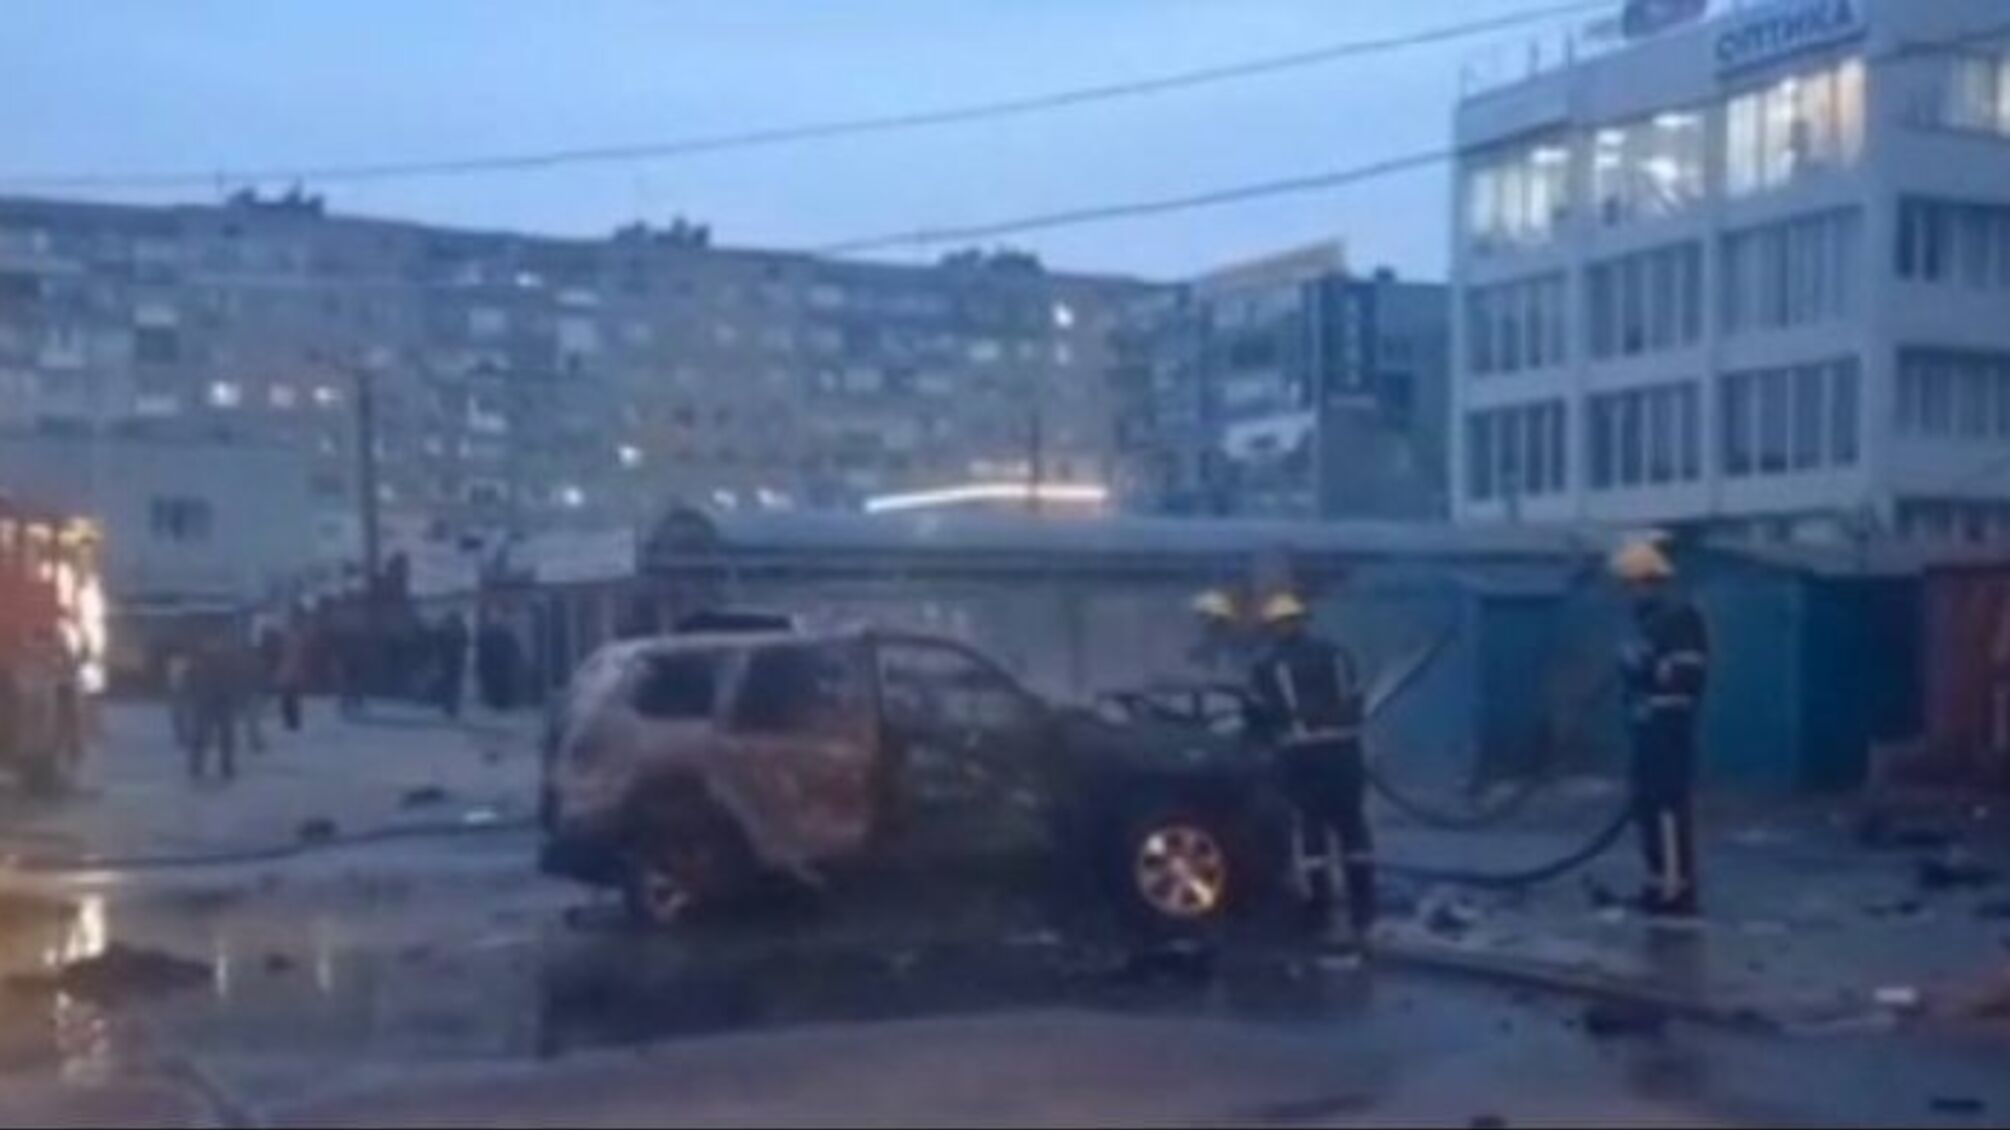 Утренний 'бавовна' в Мелитополе: в центре города сработало самодельное взрывное устройство (видео)